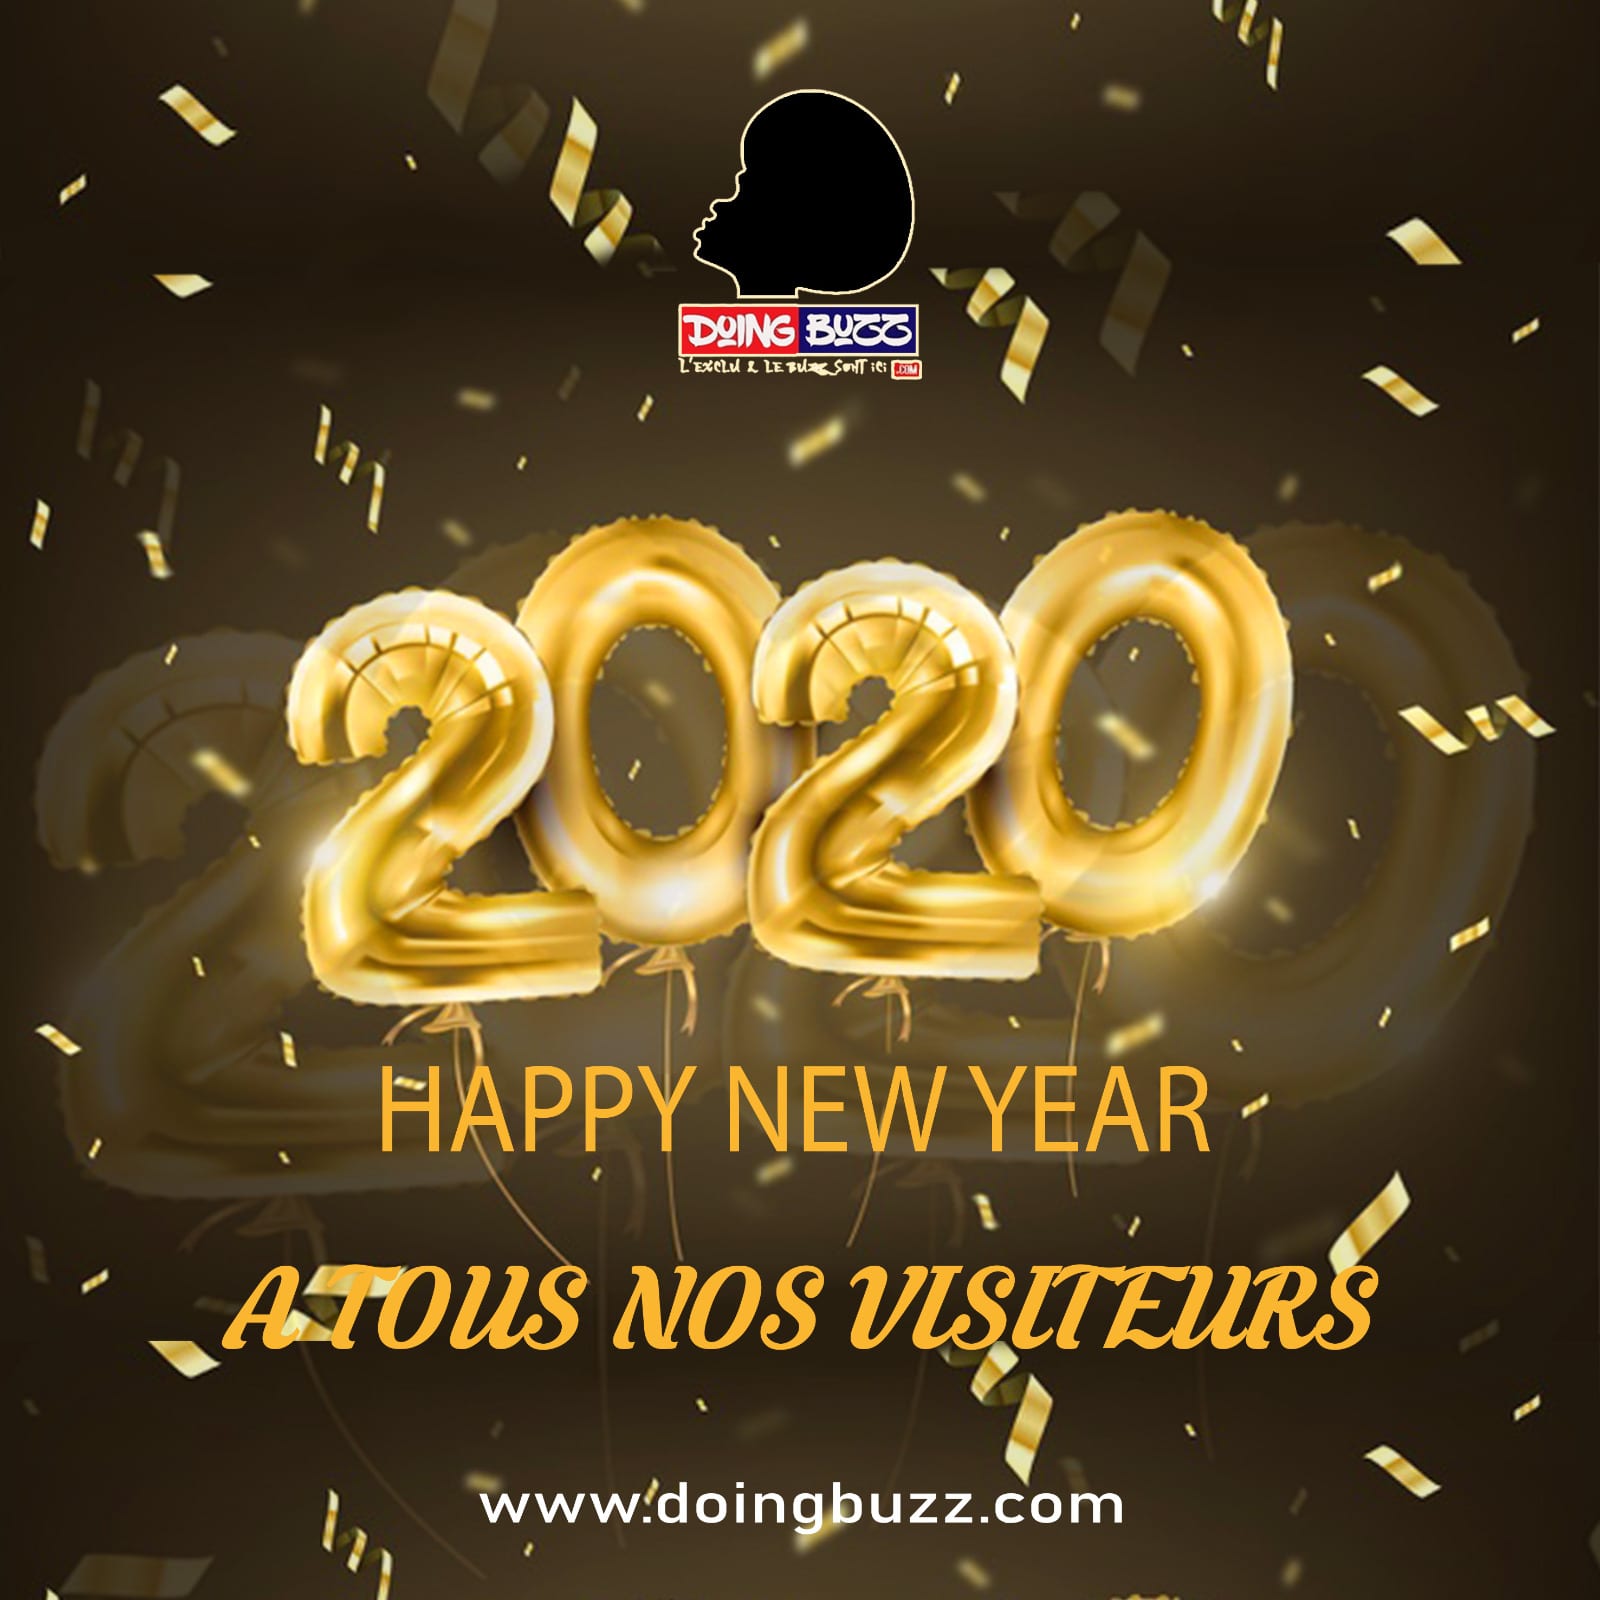 Doingbuzz Remercie Tous Ses Lecteurs Et Leur Présente Les Meilleurs Vœux Pour La Nouvelle Année